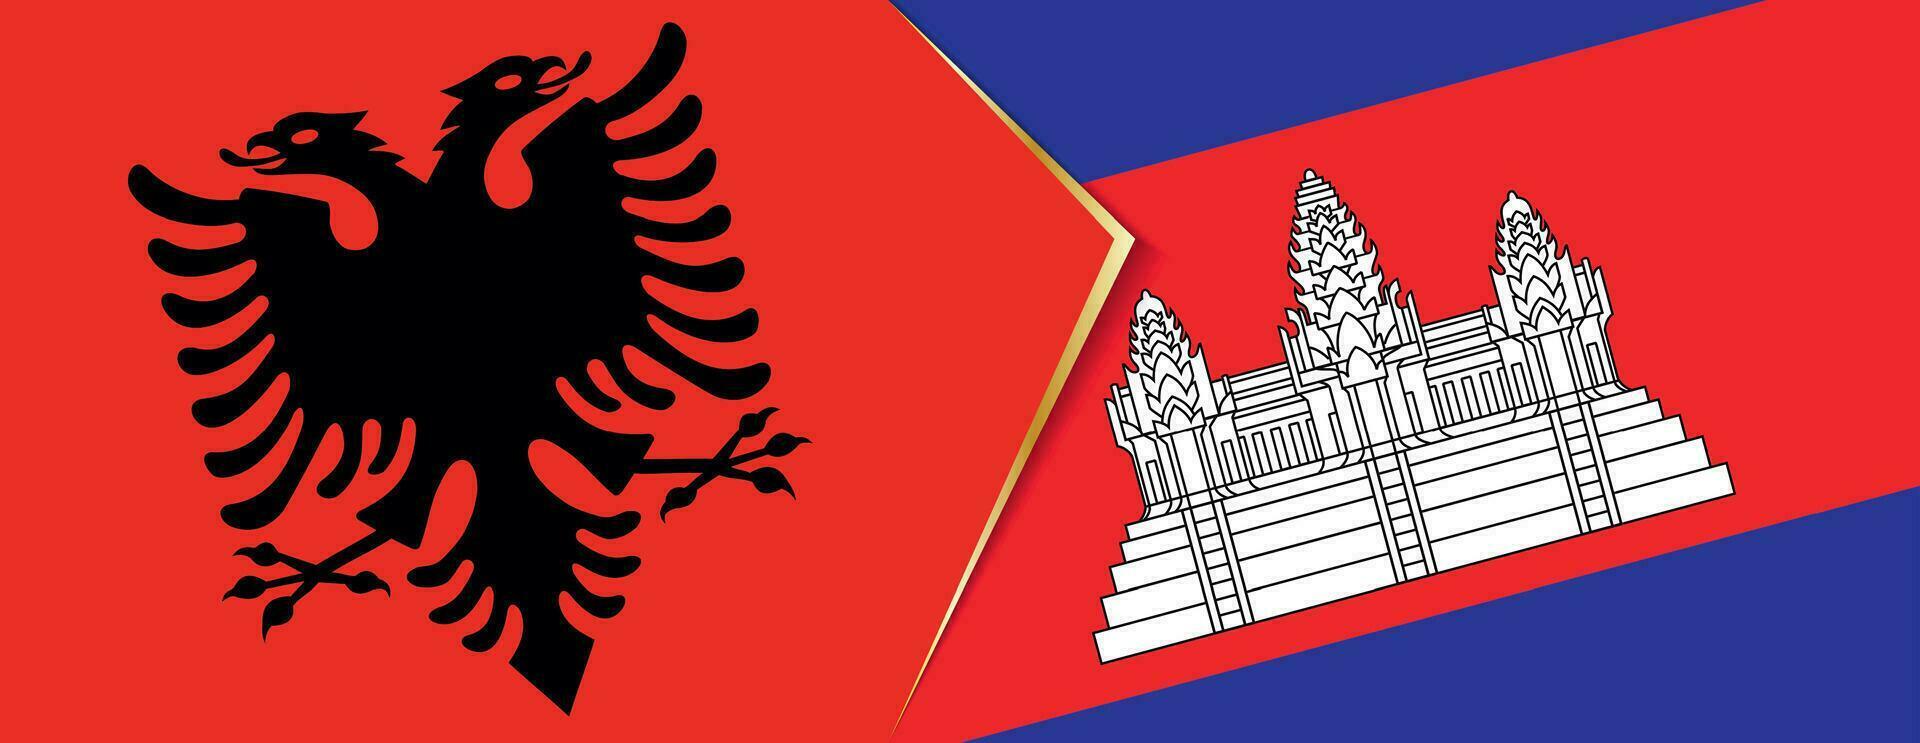 Albania e Cambogia bandiere, Due vettore bandiere.